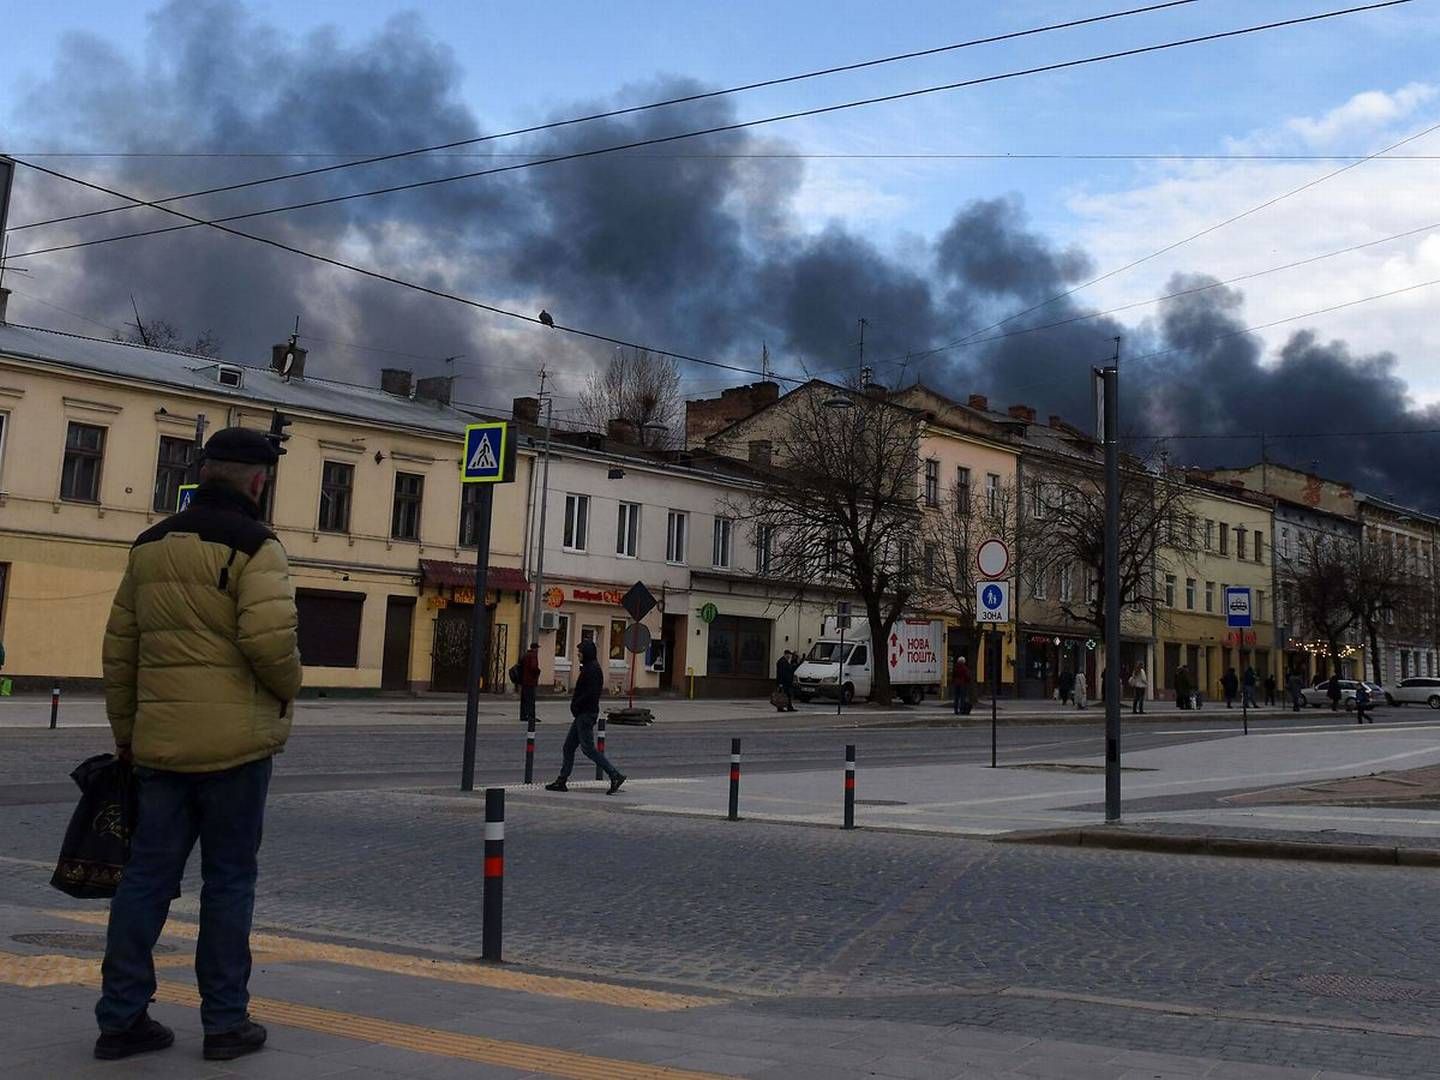 Mørk røg stiger op efter et luftangreb i den vestukrainske by Lviv den 18. april 2022. | Foto: Yuriy Dyachyshyn/AFP/Ritzau Scanpix